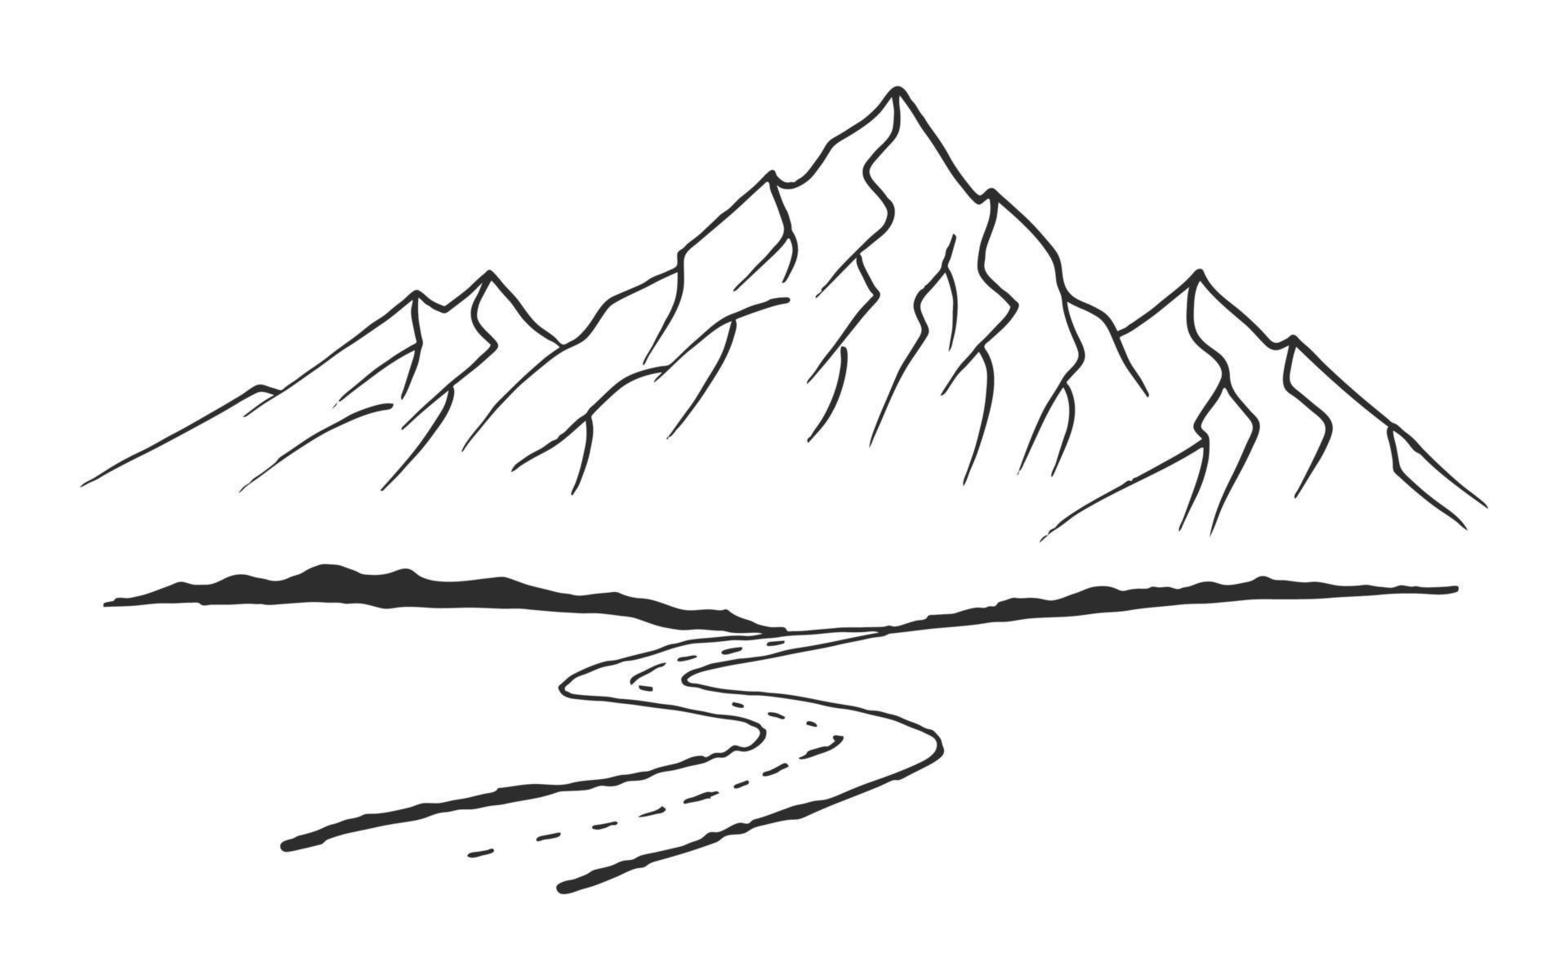 strada per le montagne. paesaggio nero su sfondo bianco. picchi rocciosi disegnati a mano nello stile di abbozzo. illustrazione vettoriale